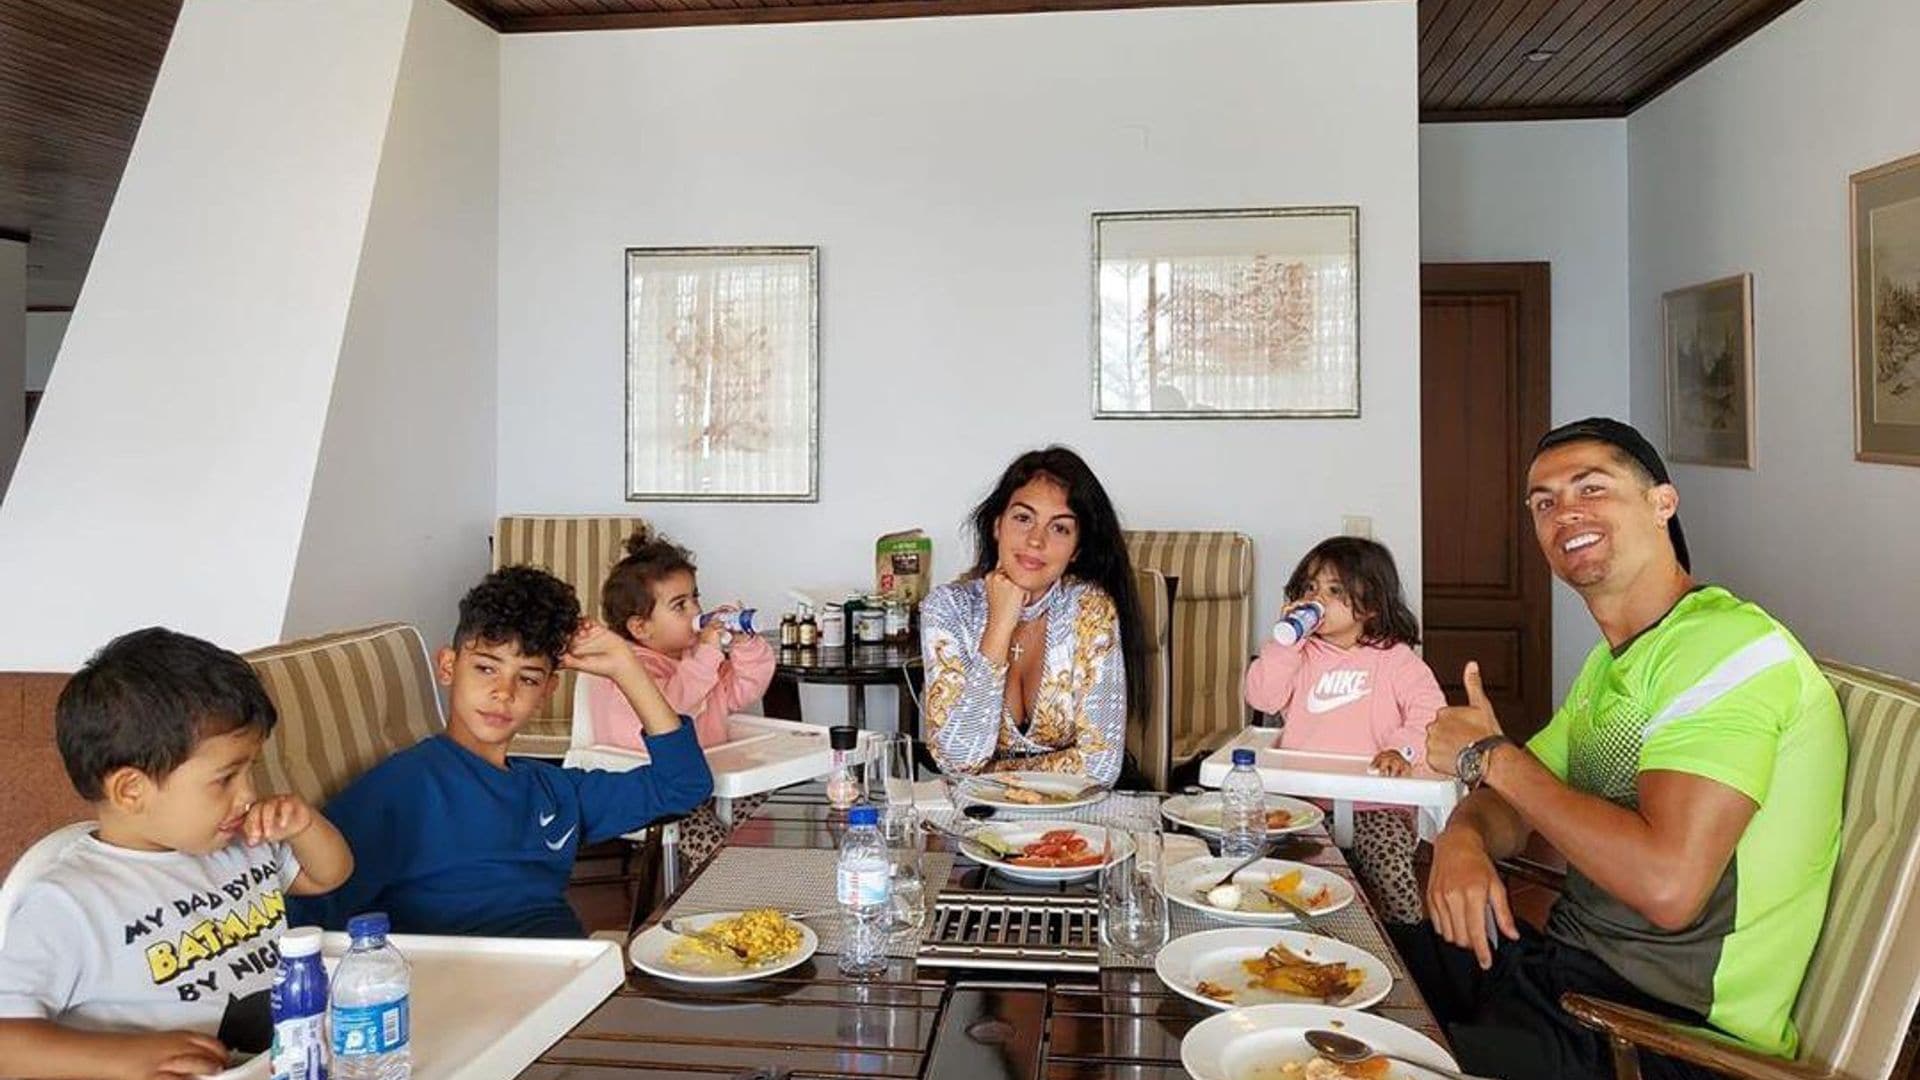 Mateo, el hijo de Cristiano Ronaldo, es todo risas al lado de su padre